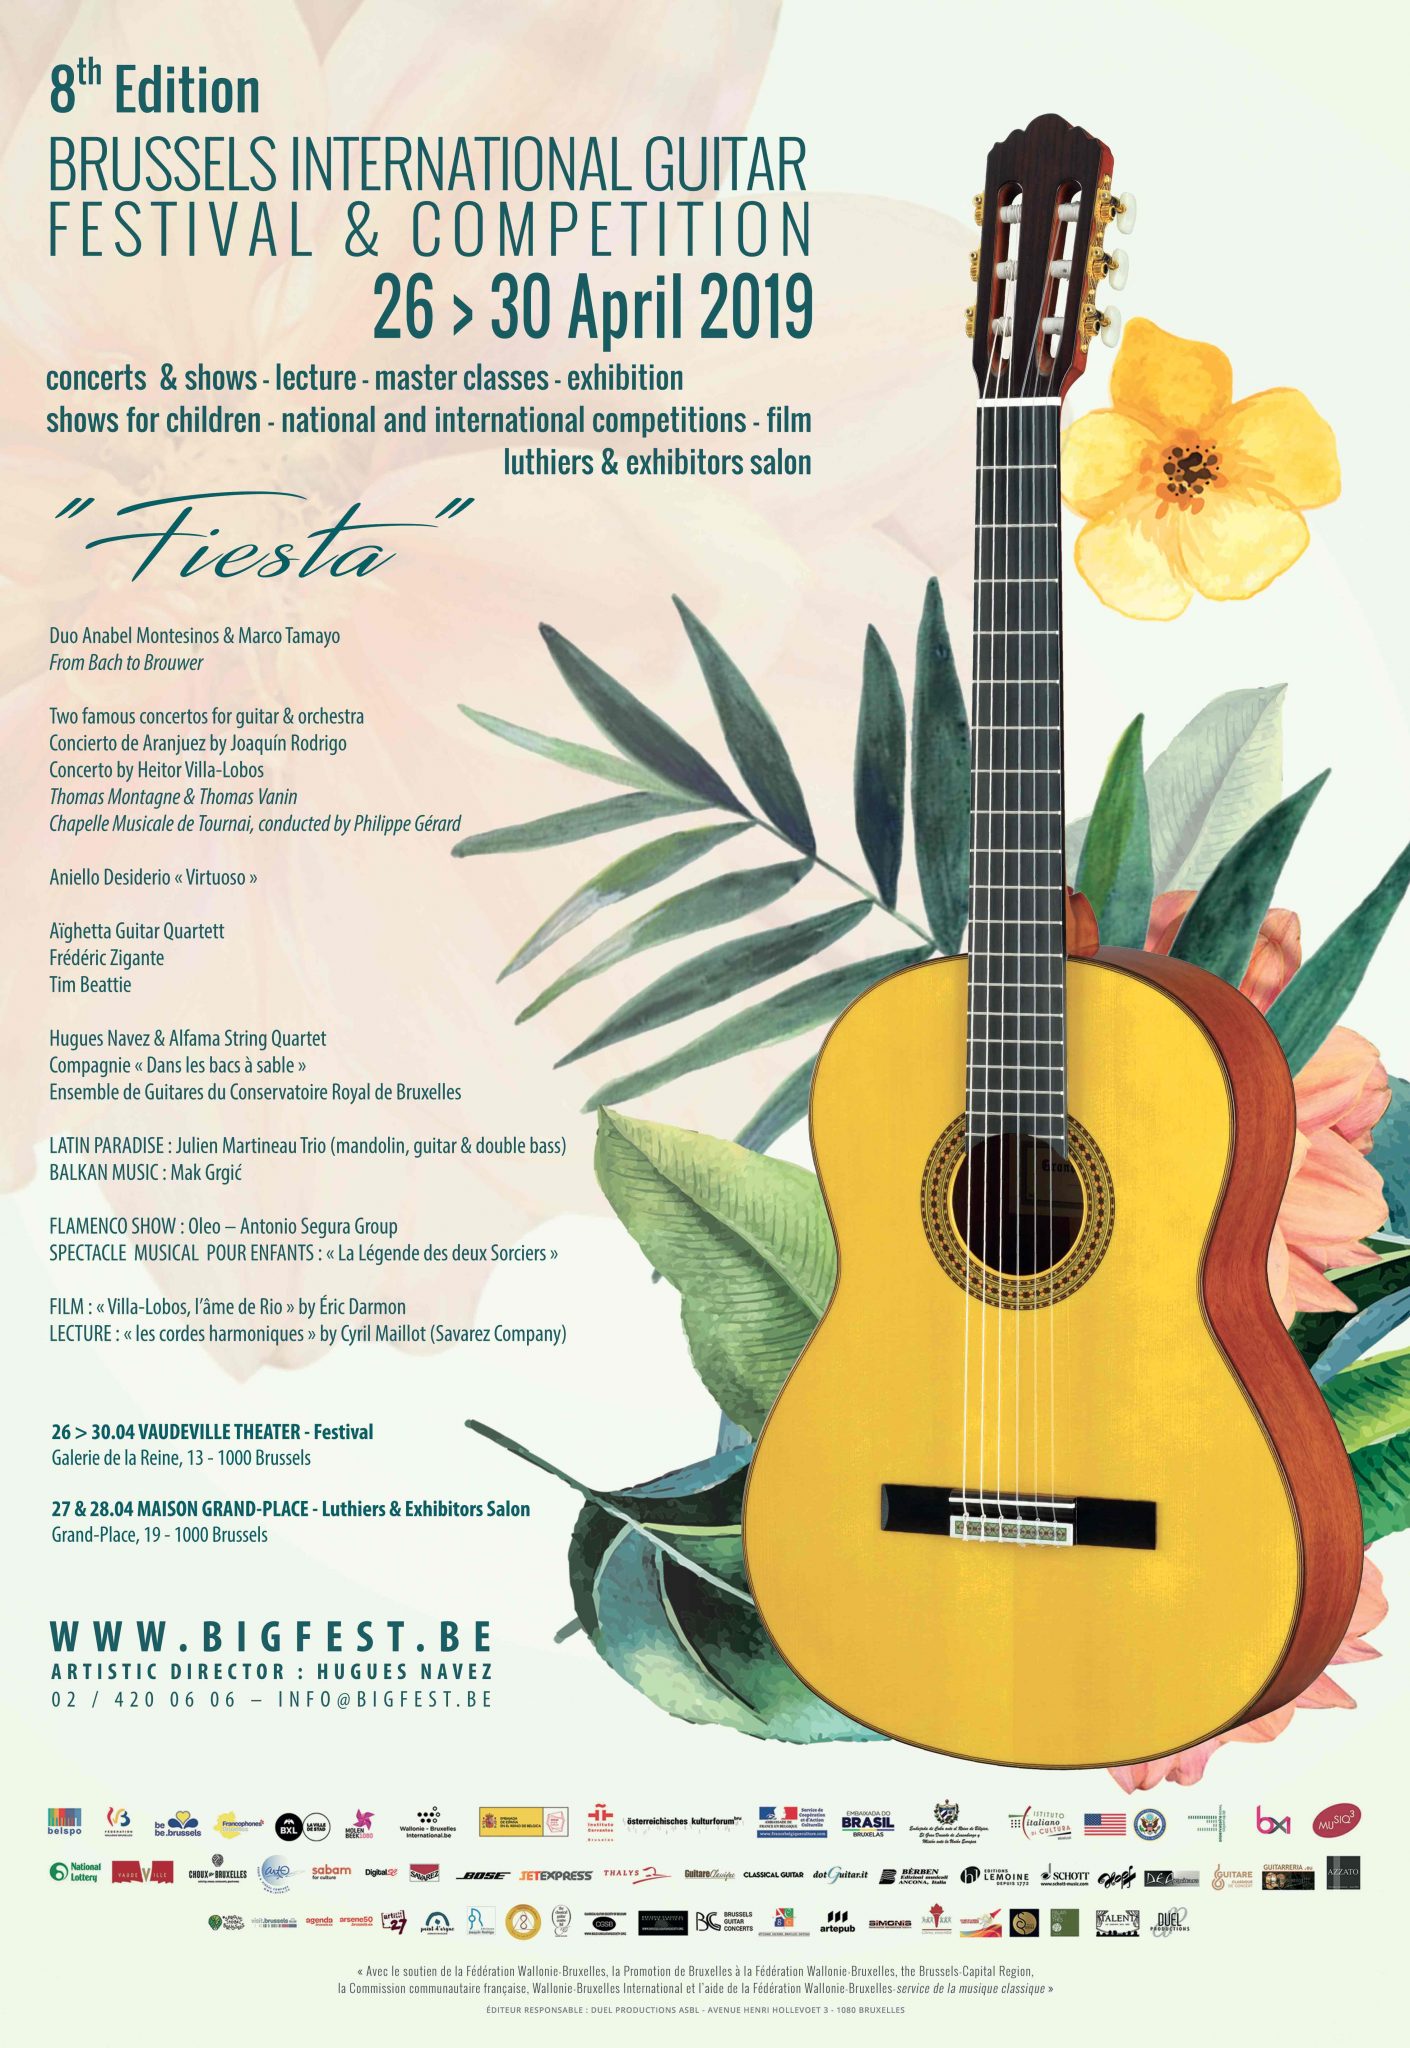 Brussels International Guitar Festival & Competition @ Vaudeville Theater | Bruxelles | Bruxelles | België